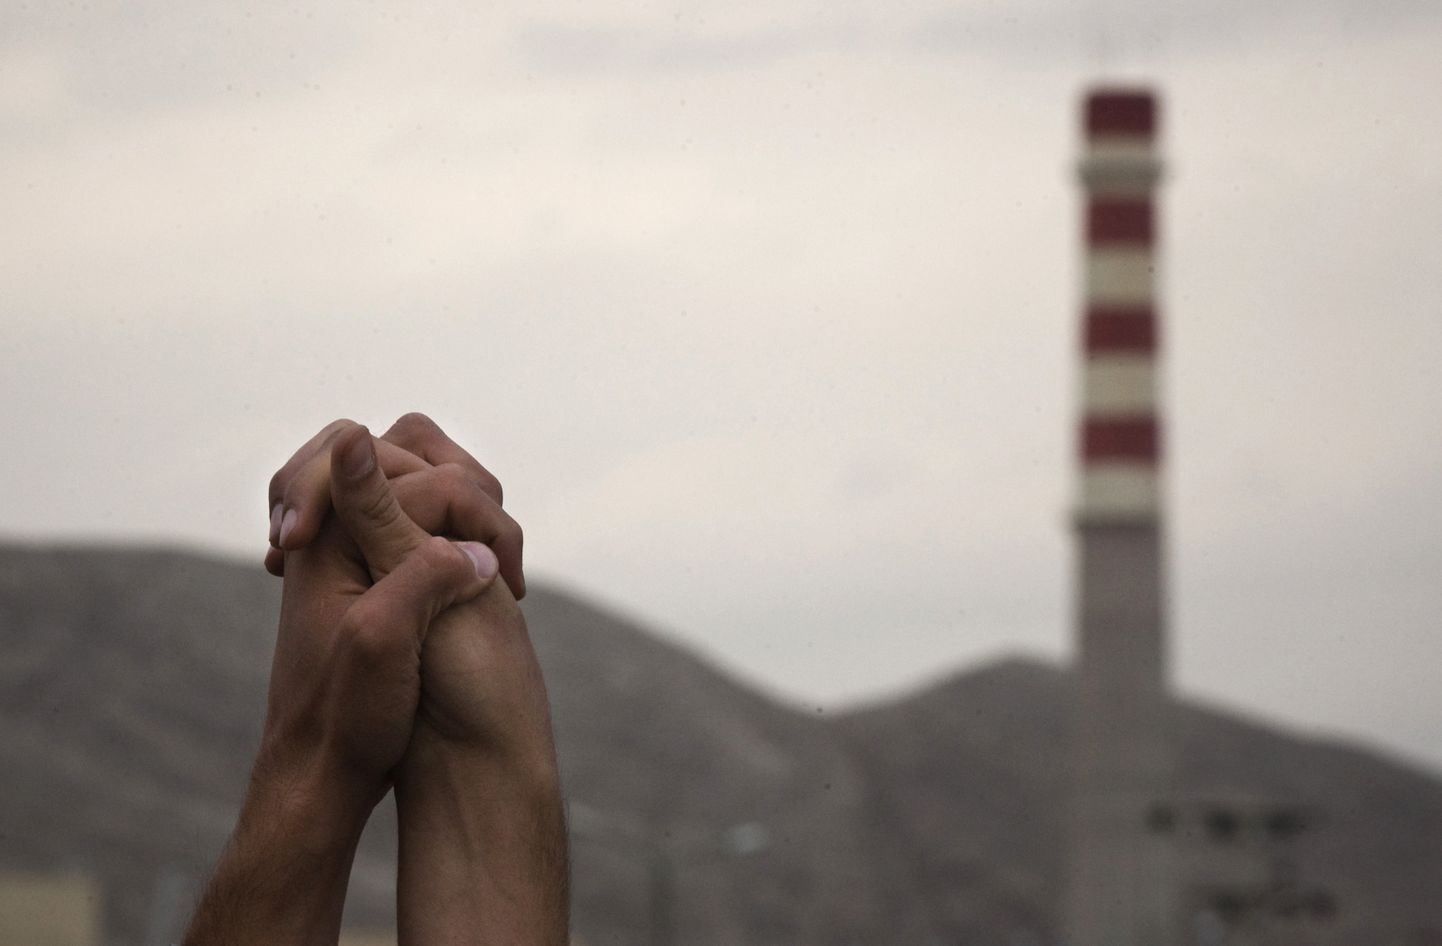 Iraani tudengid hoiavad 2011. aastal kätest kinni Iraanis Isfahani uraanirikastamistehase lähistel, avaldades toetust riigi tuumaprogrammile.